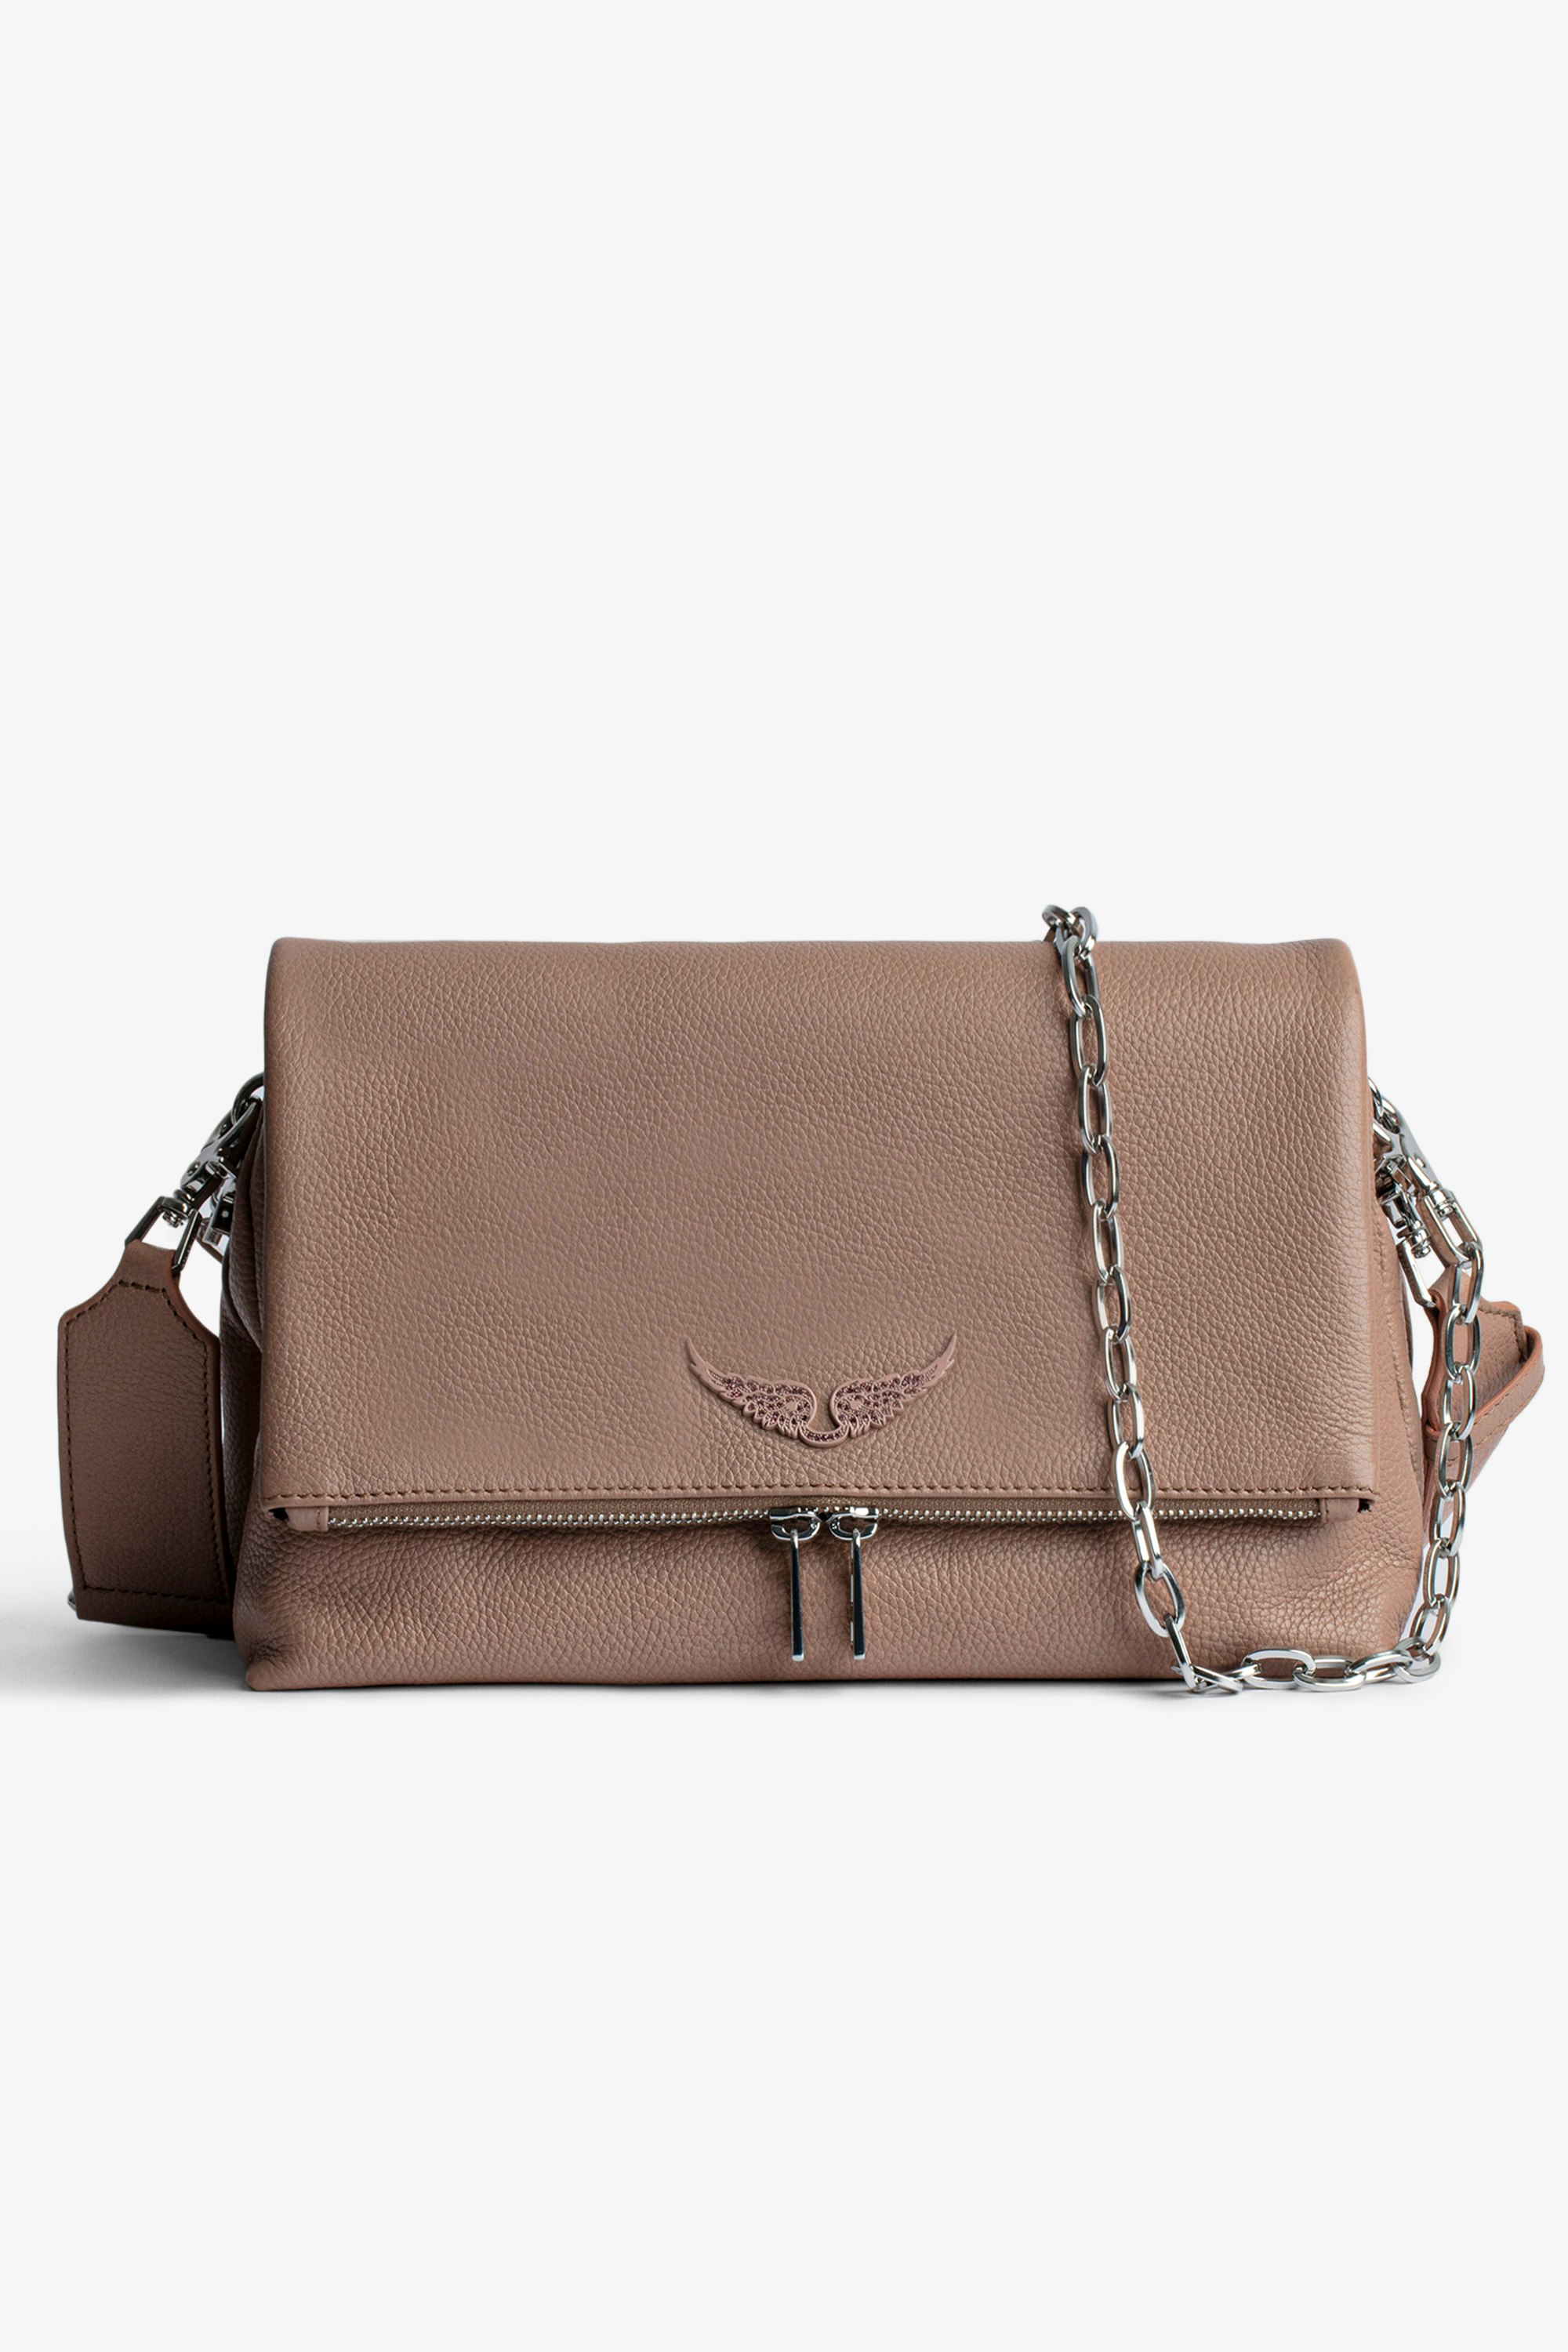 Tasche Rocky Damen-Handtasche aus genarbtem Leder in pudrigem Rosa mit Schulterriemen und Metallkette